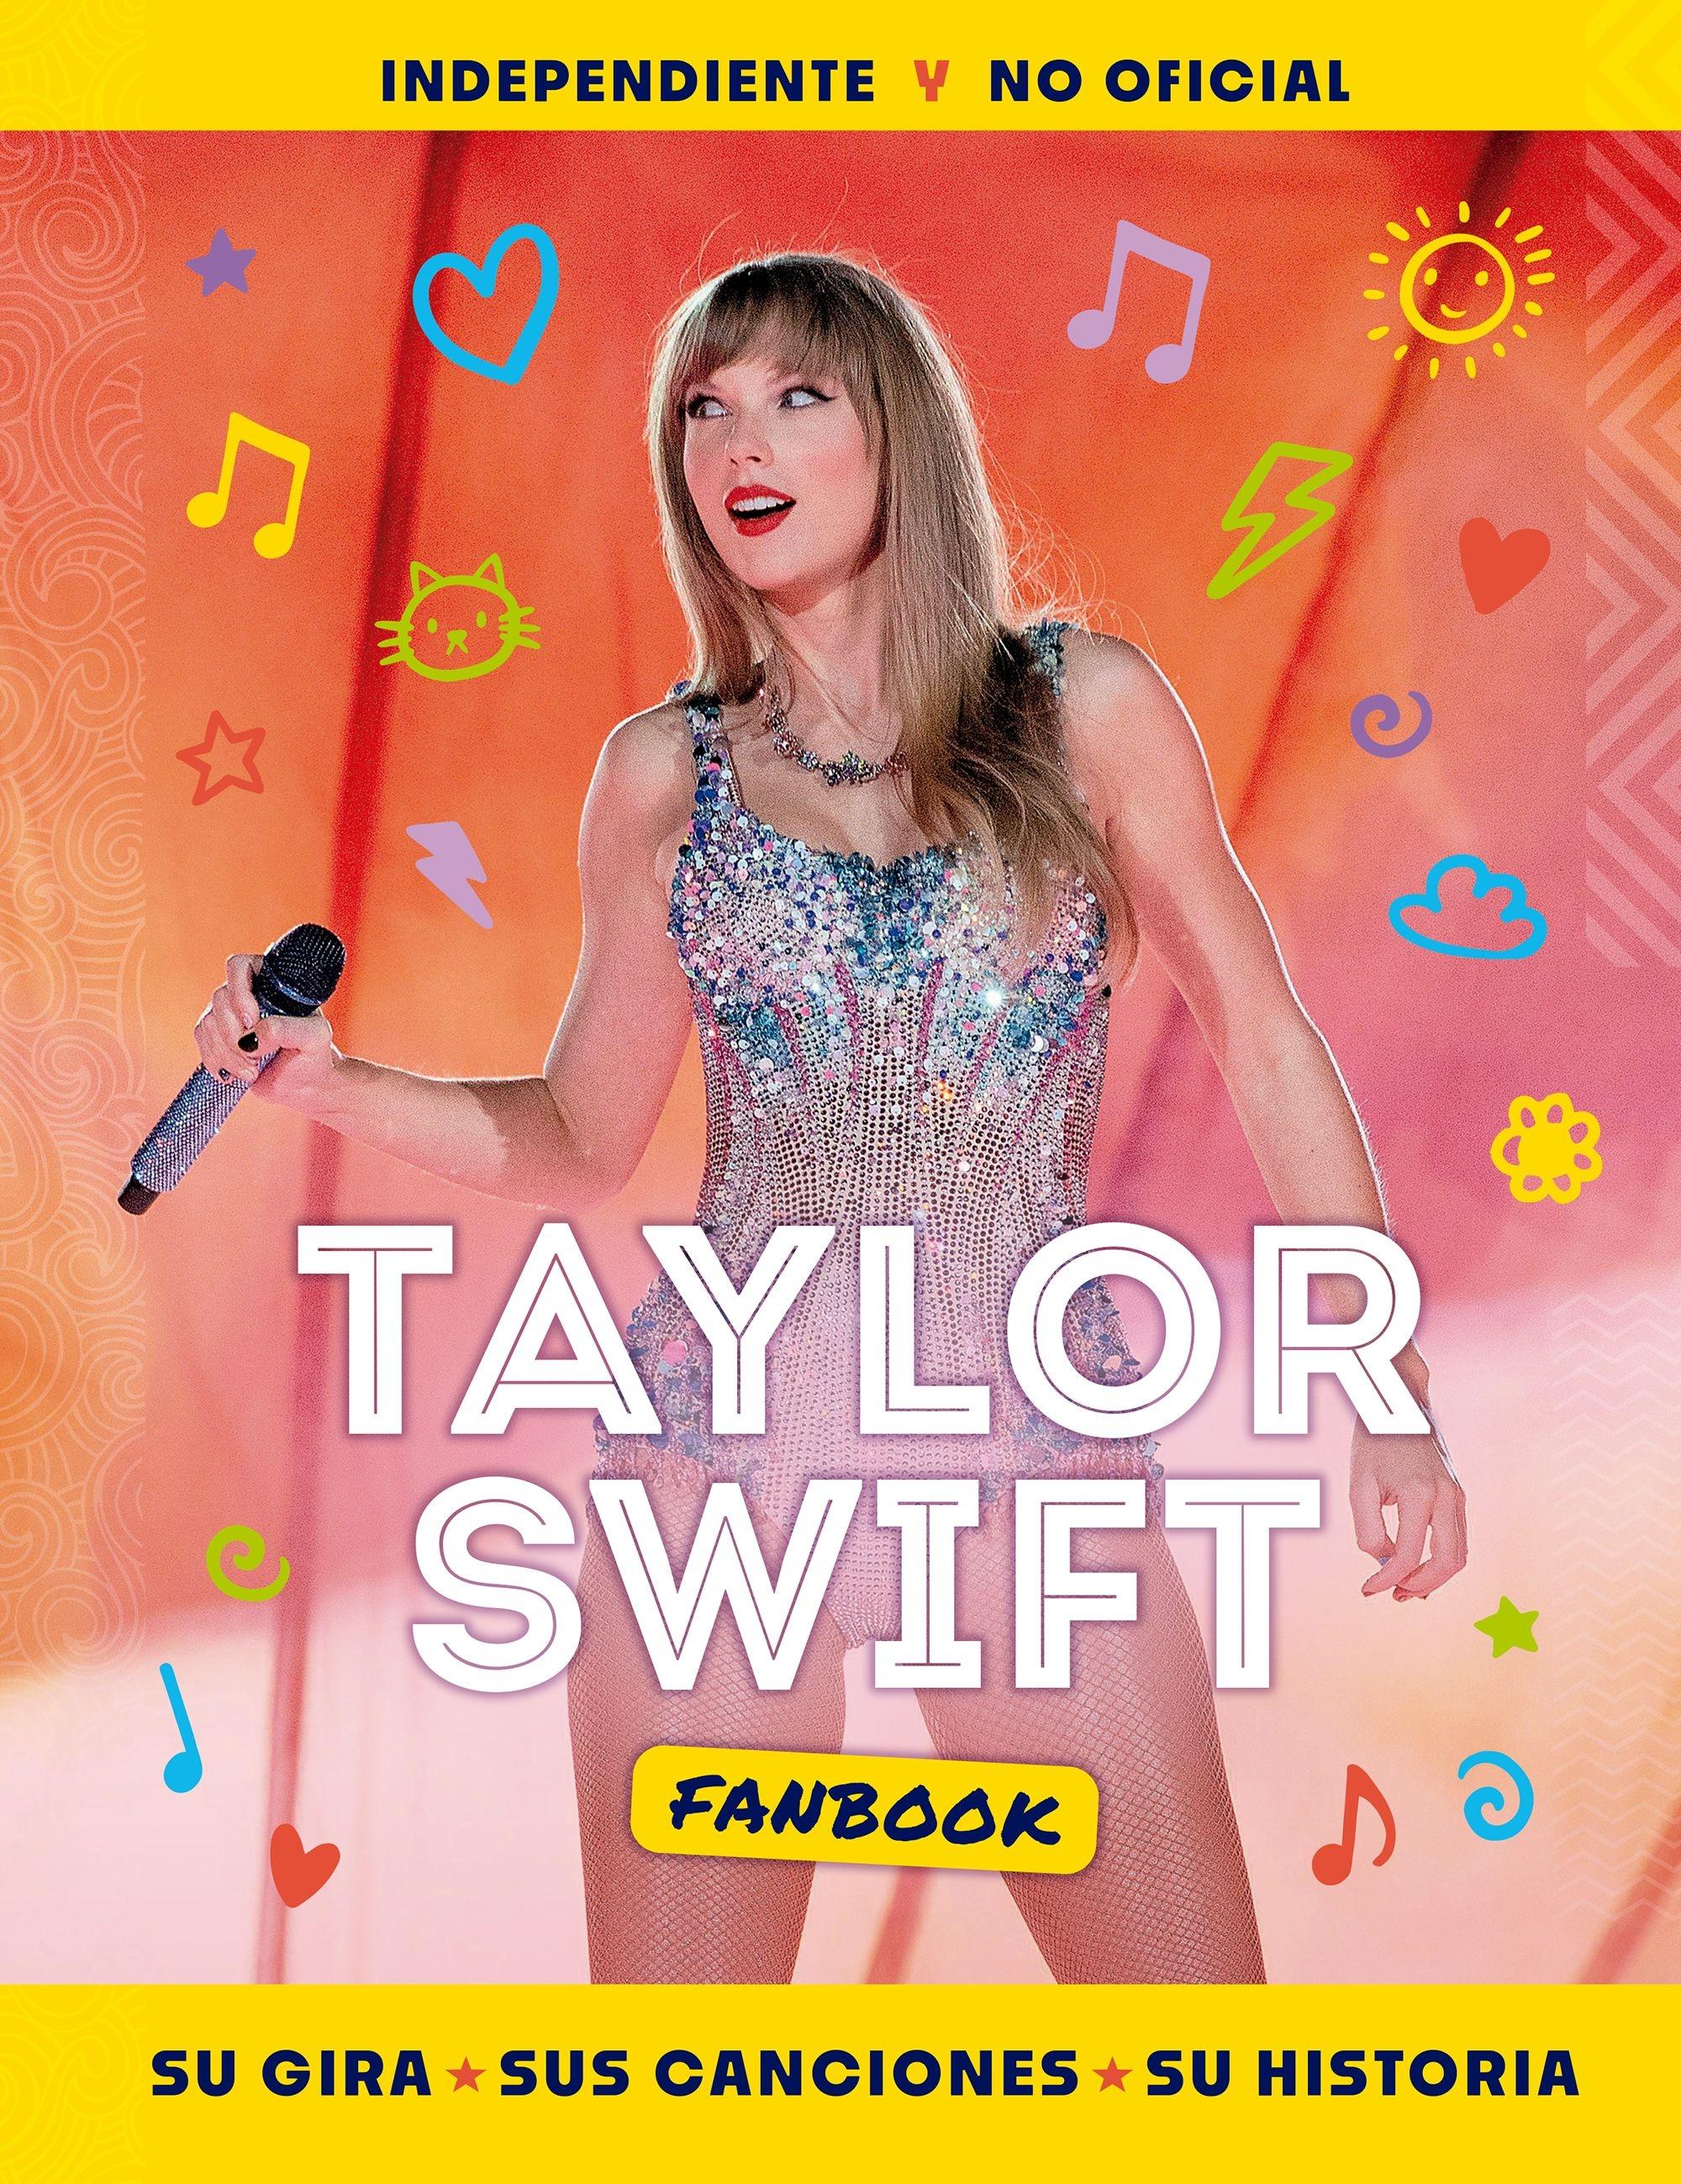 Taylor Swift Fanbook "Su gira, sus canciones y su historia"